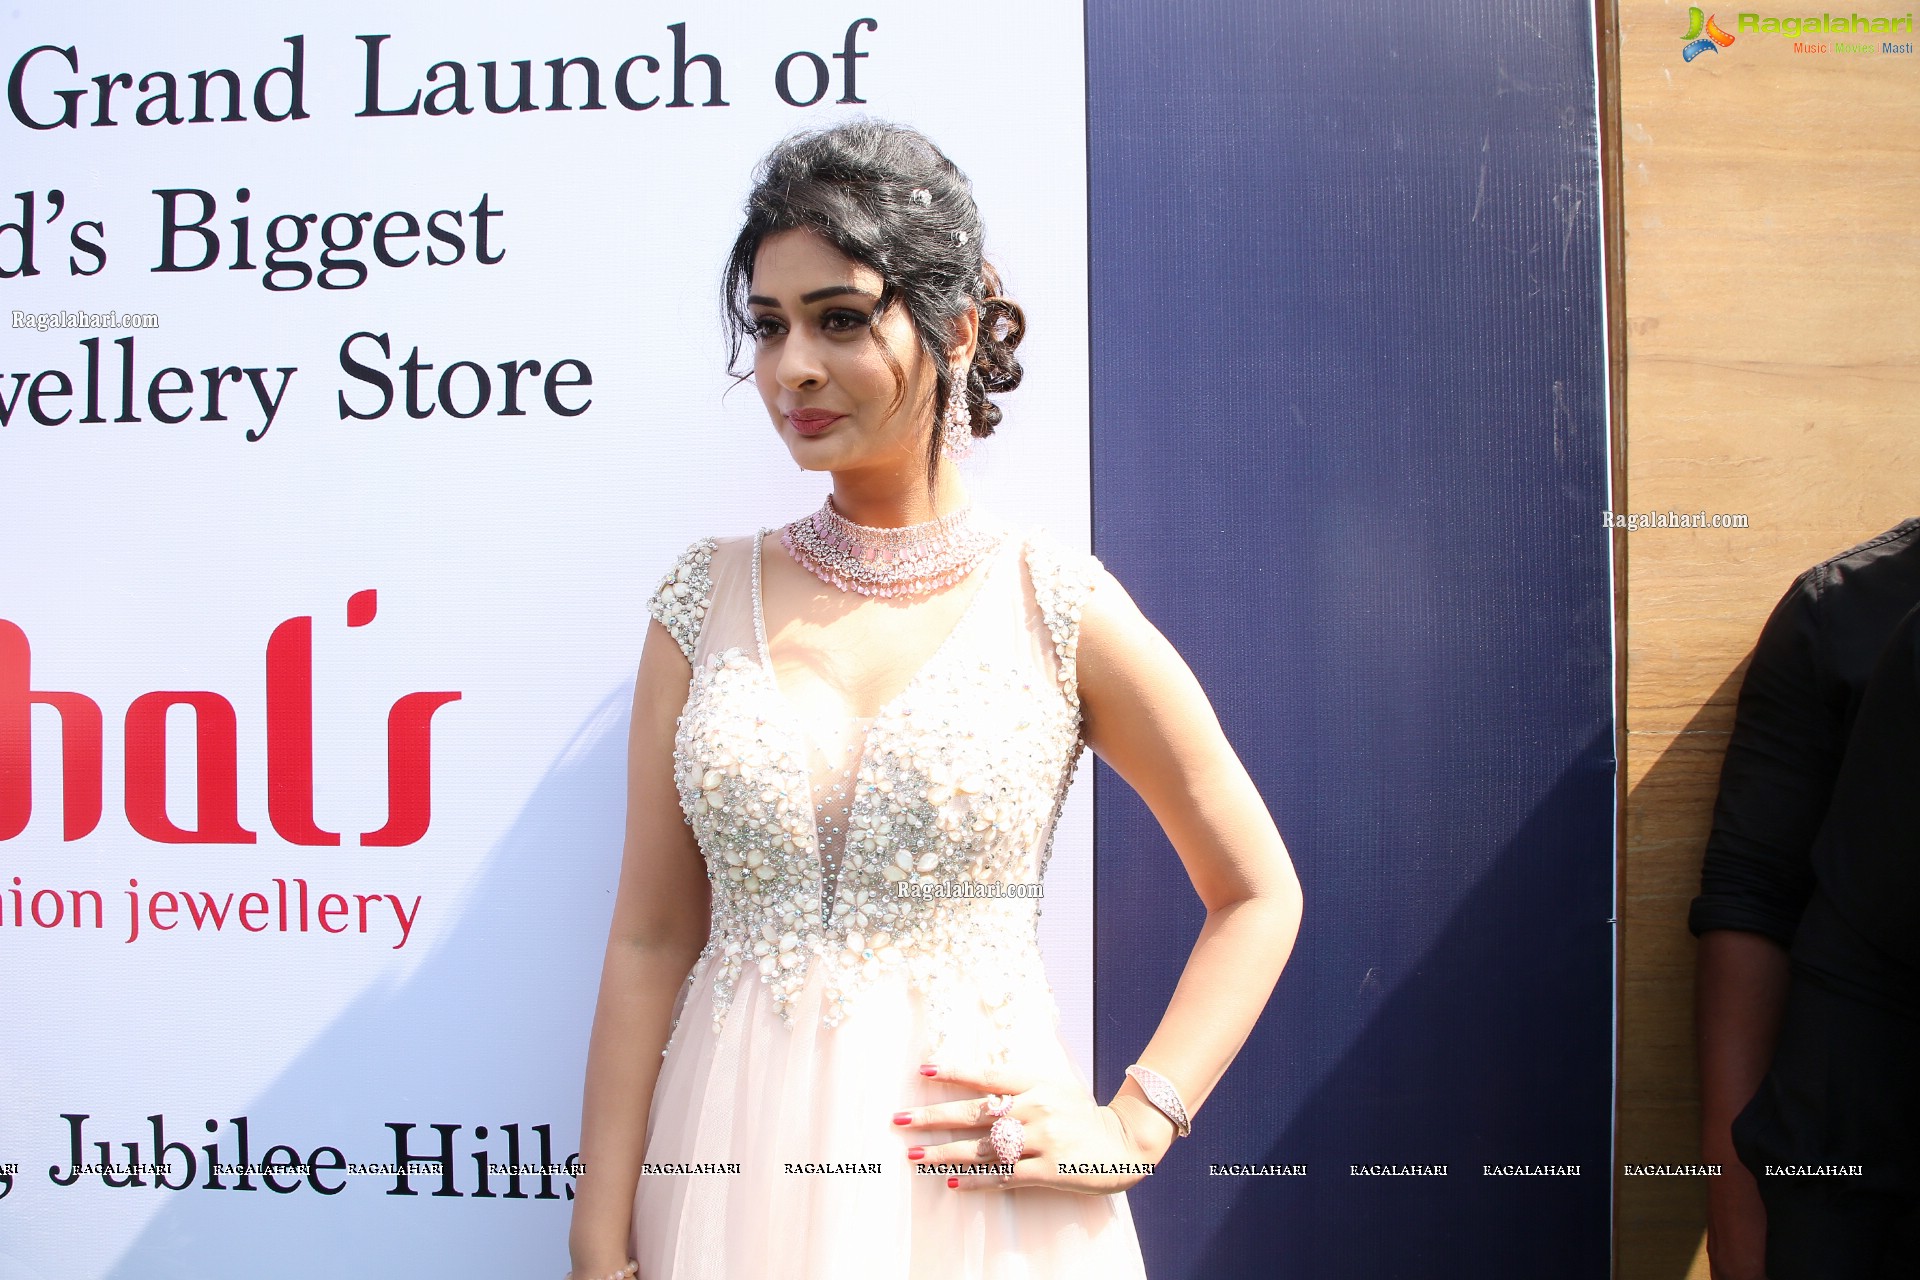 Payal Rajput @ Kushal’s Fashion Jewellery 6th Store Launch - HD Gallery